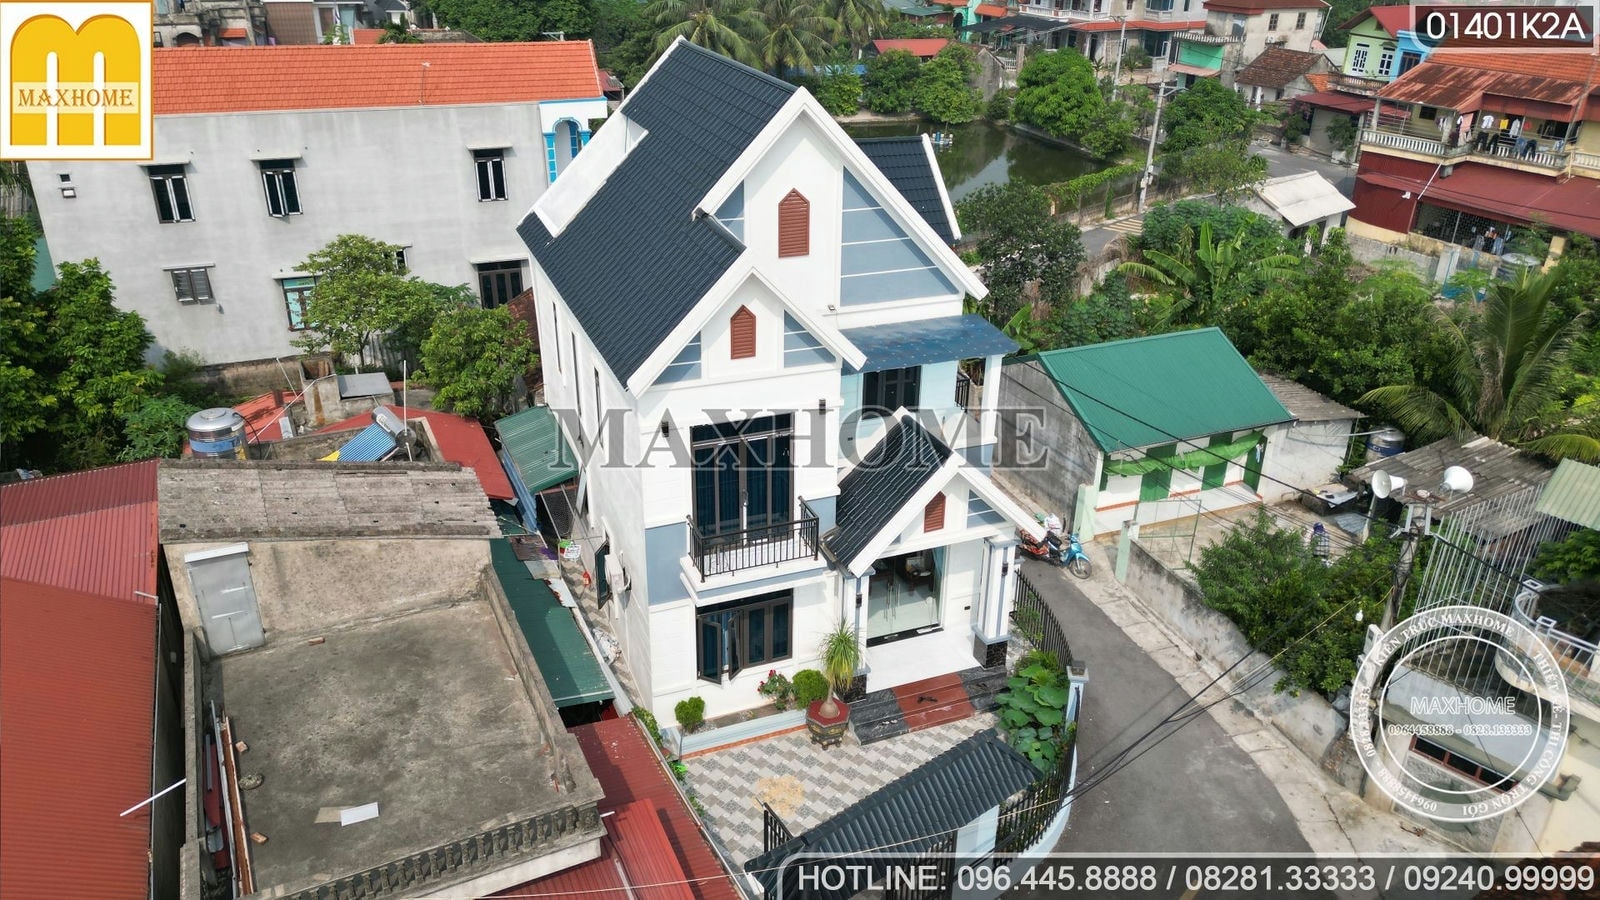 Maxhome thi công nhà 2 tầng mái Thái NÉT CĂNG | MH00741